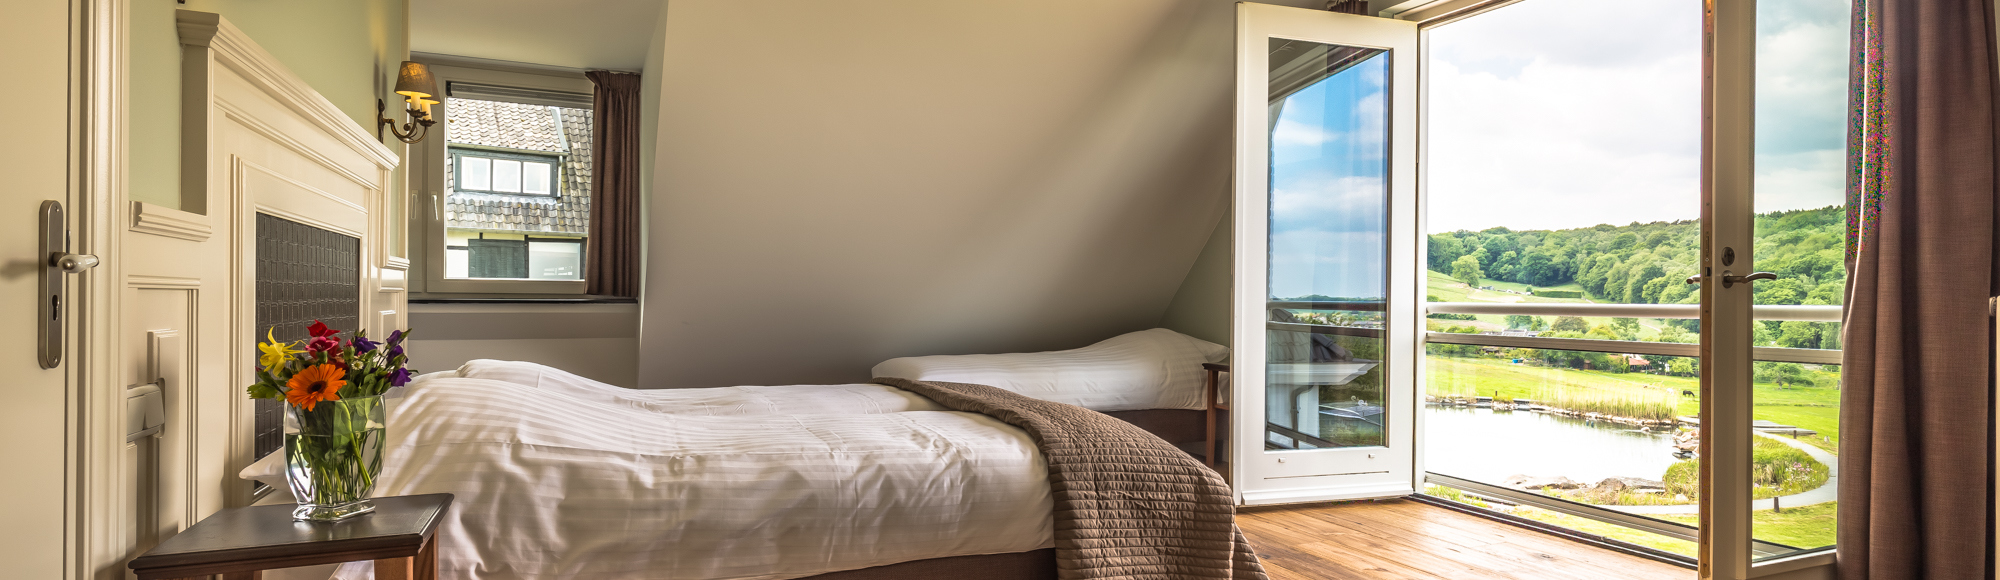 Een prachtige slaapkamer bij de Smockelaer met uitzicht op de groene heuvels